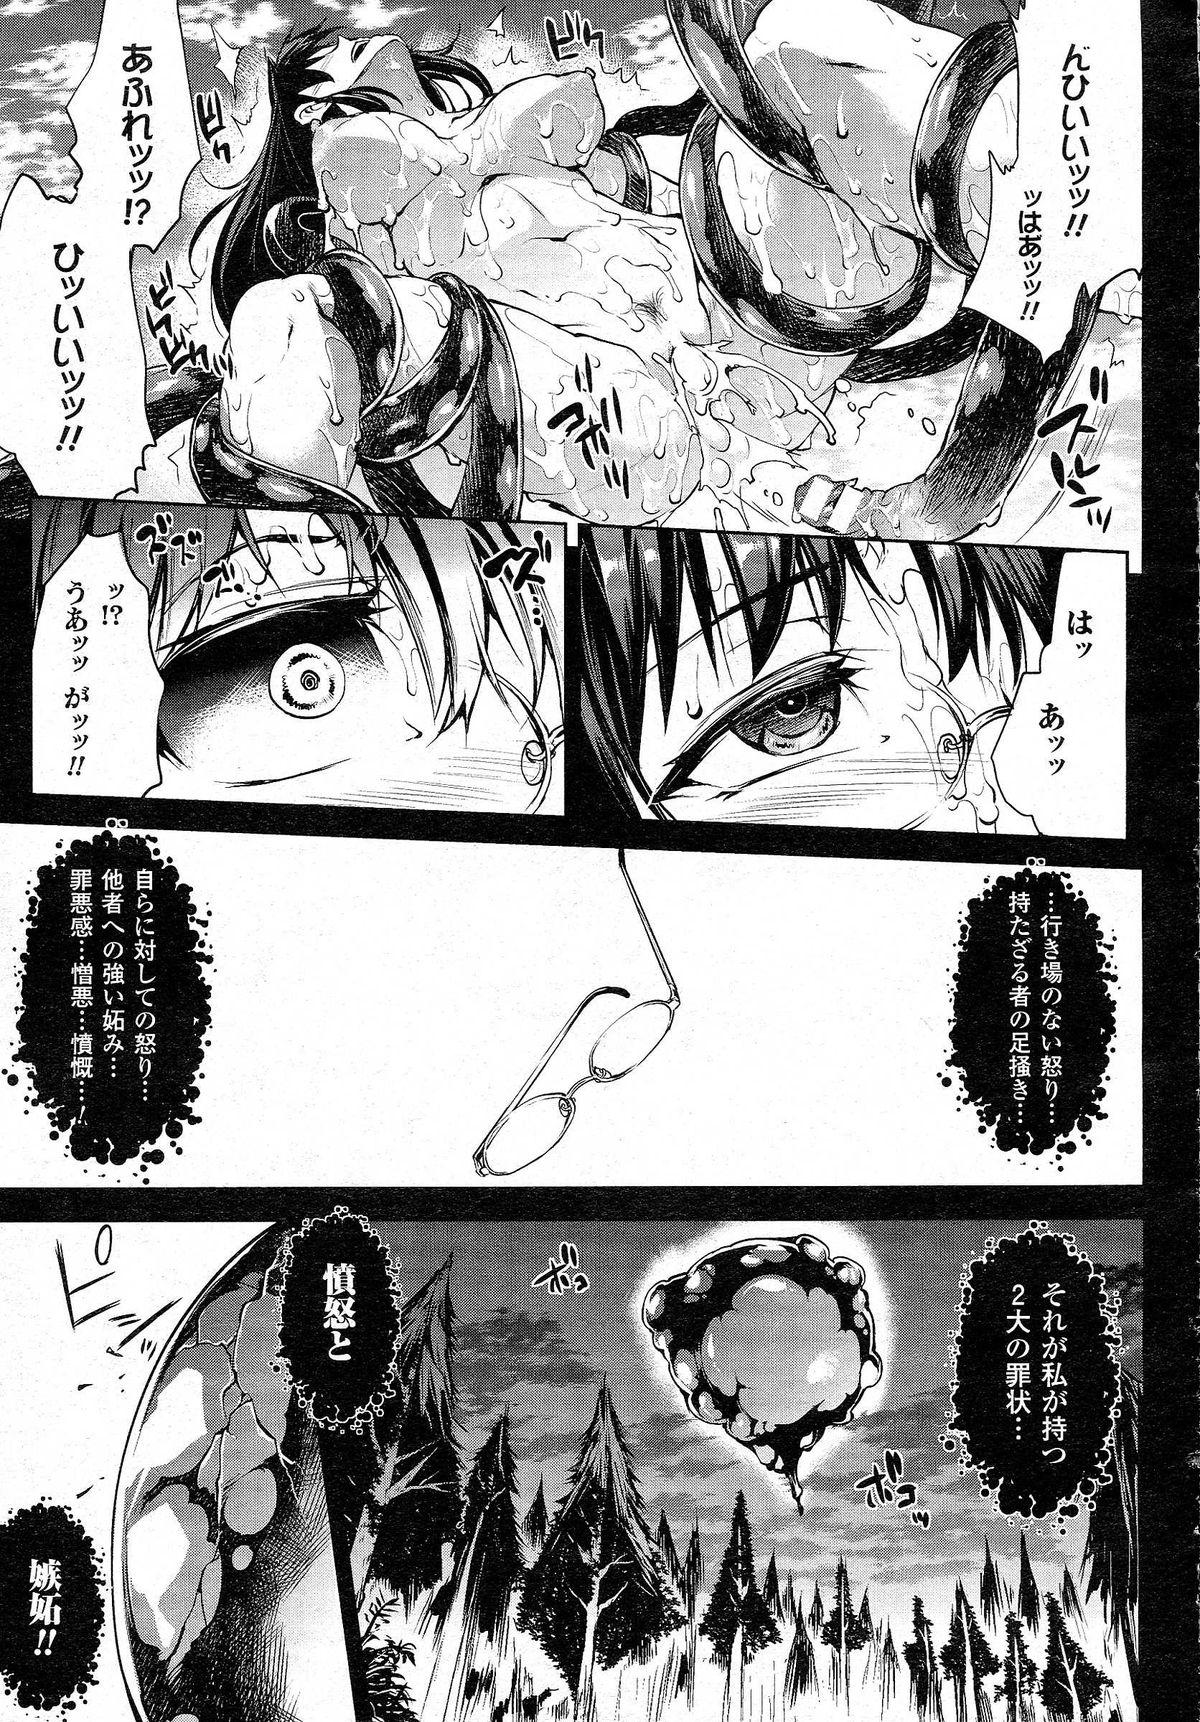 Audition [Erect Sawaru] Shinkyoku no Grimoire -PANDRA saga 2nd story- CH 13-20 She - Page 11